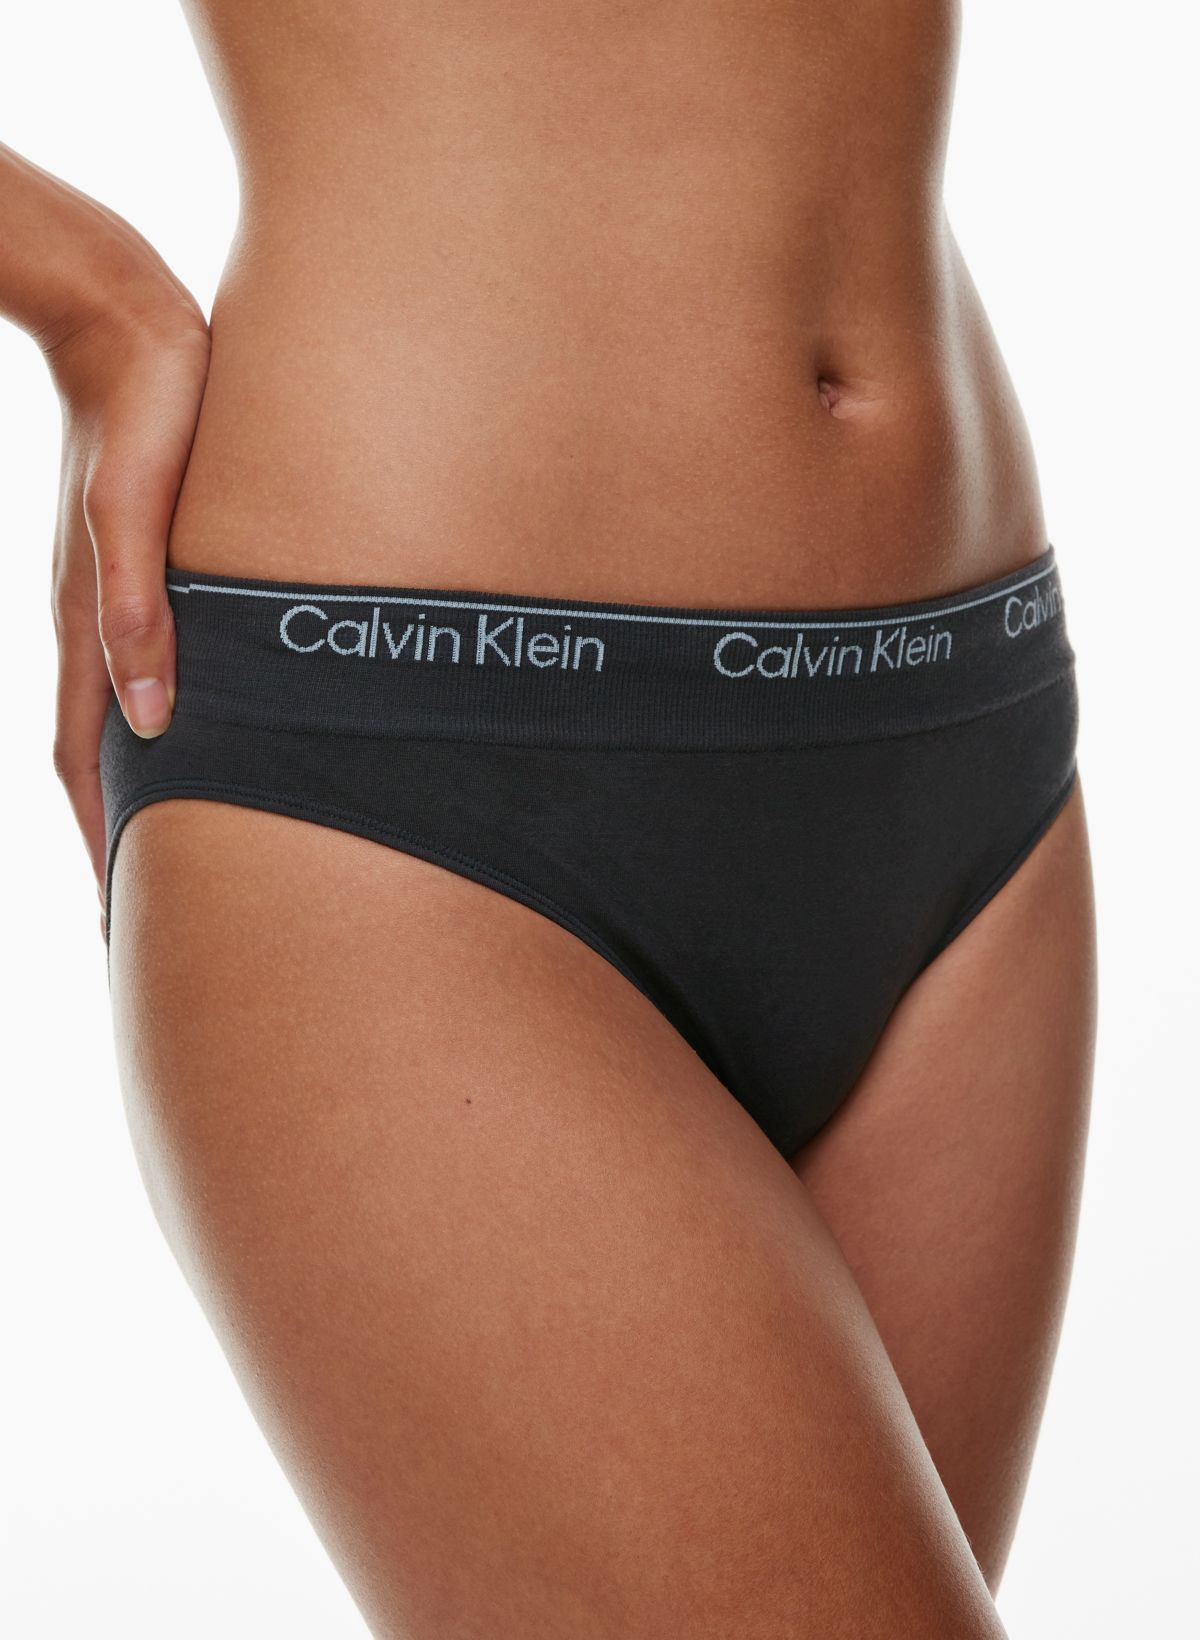 Calvin Klein Women'S Modern Cotton Stretch Bikini Panty, Black